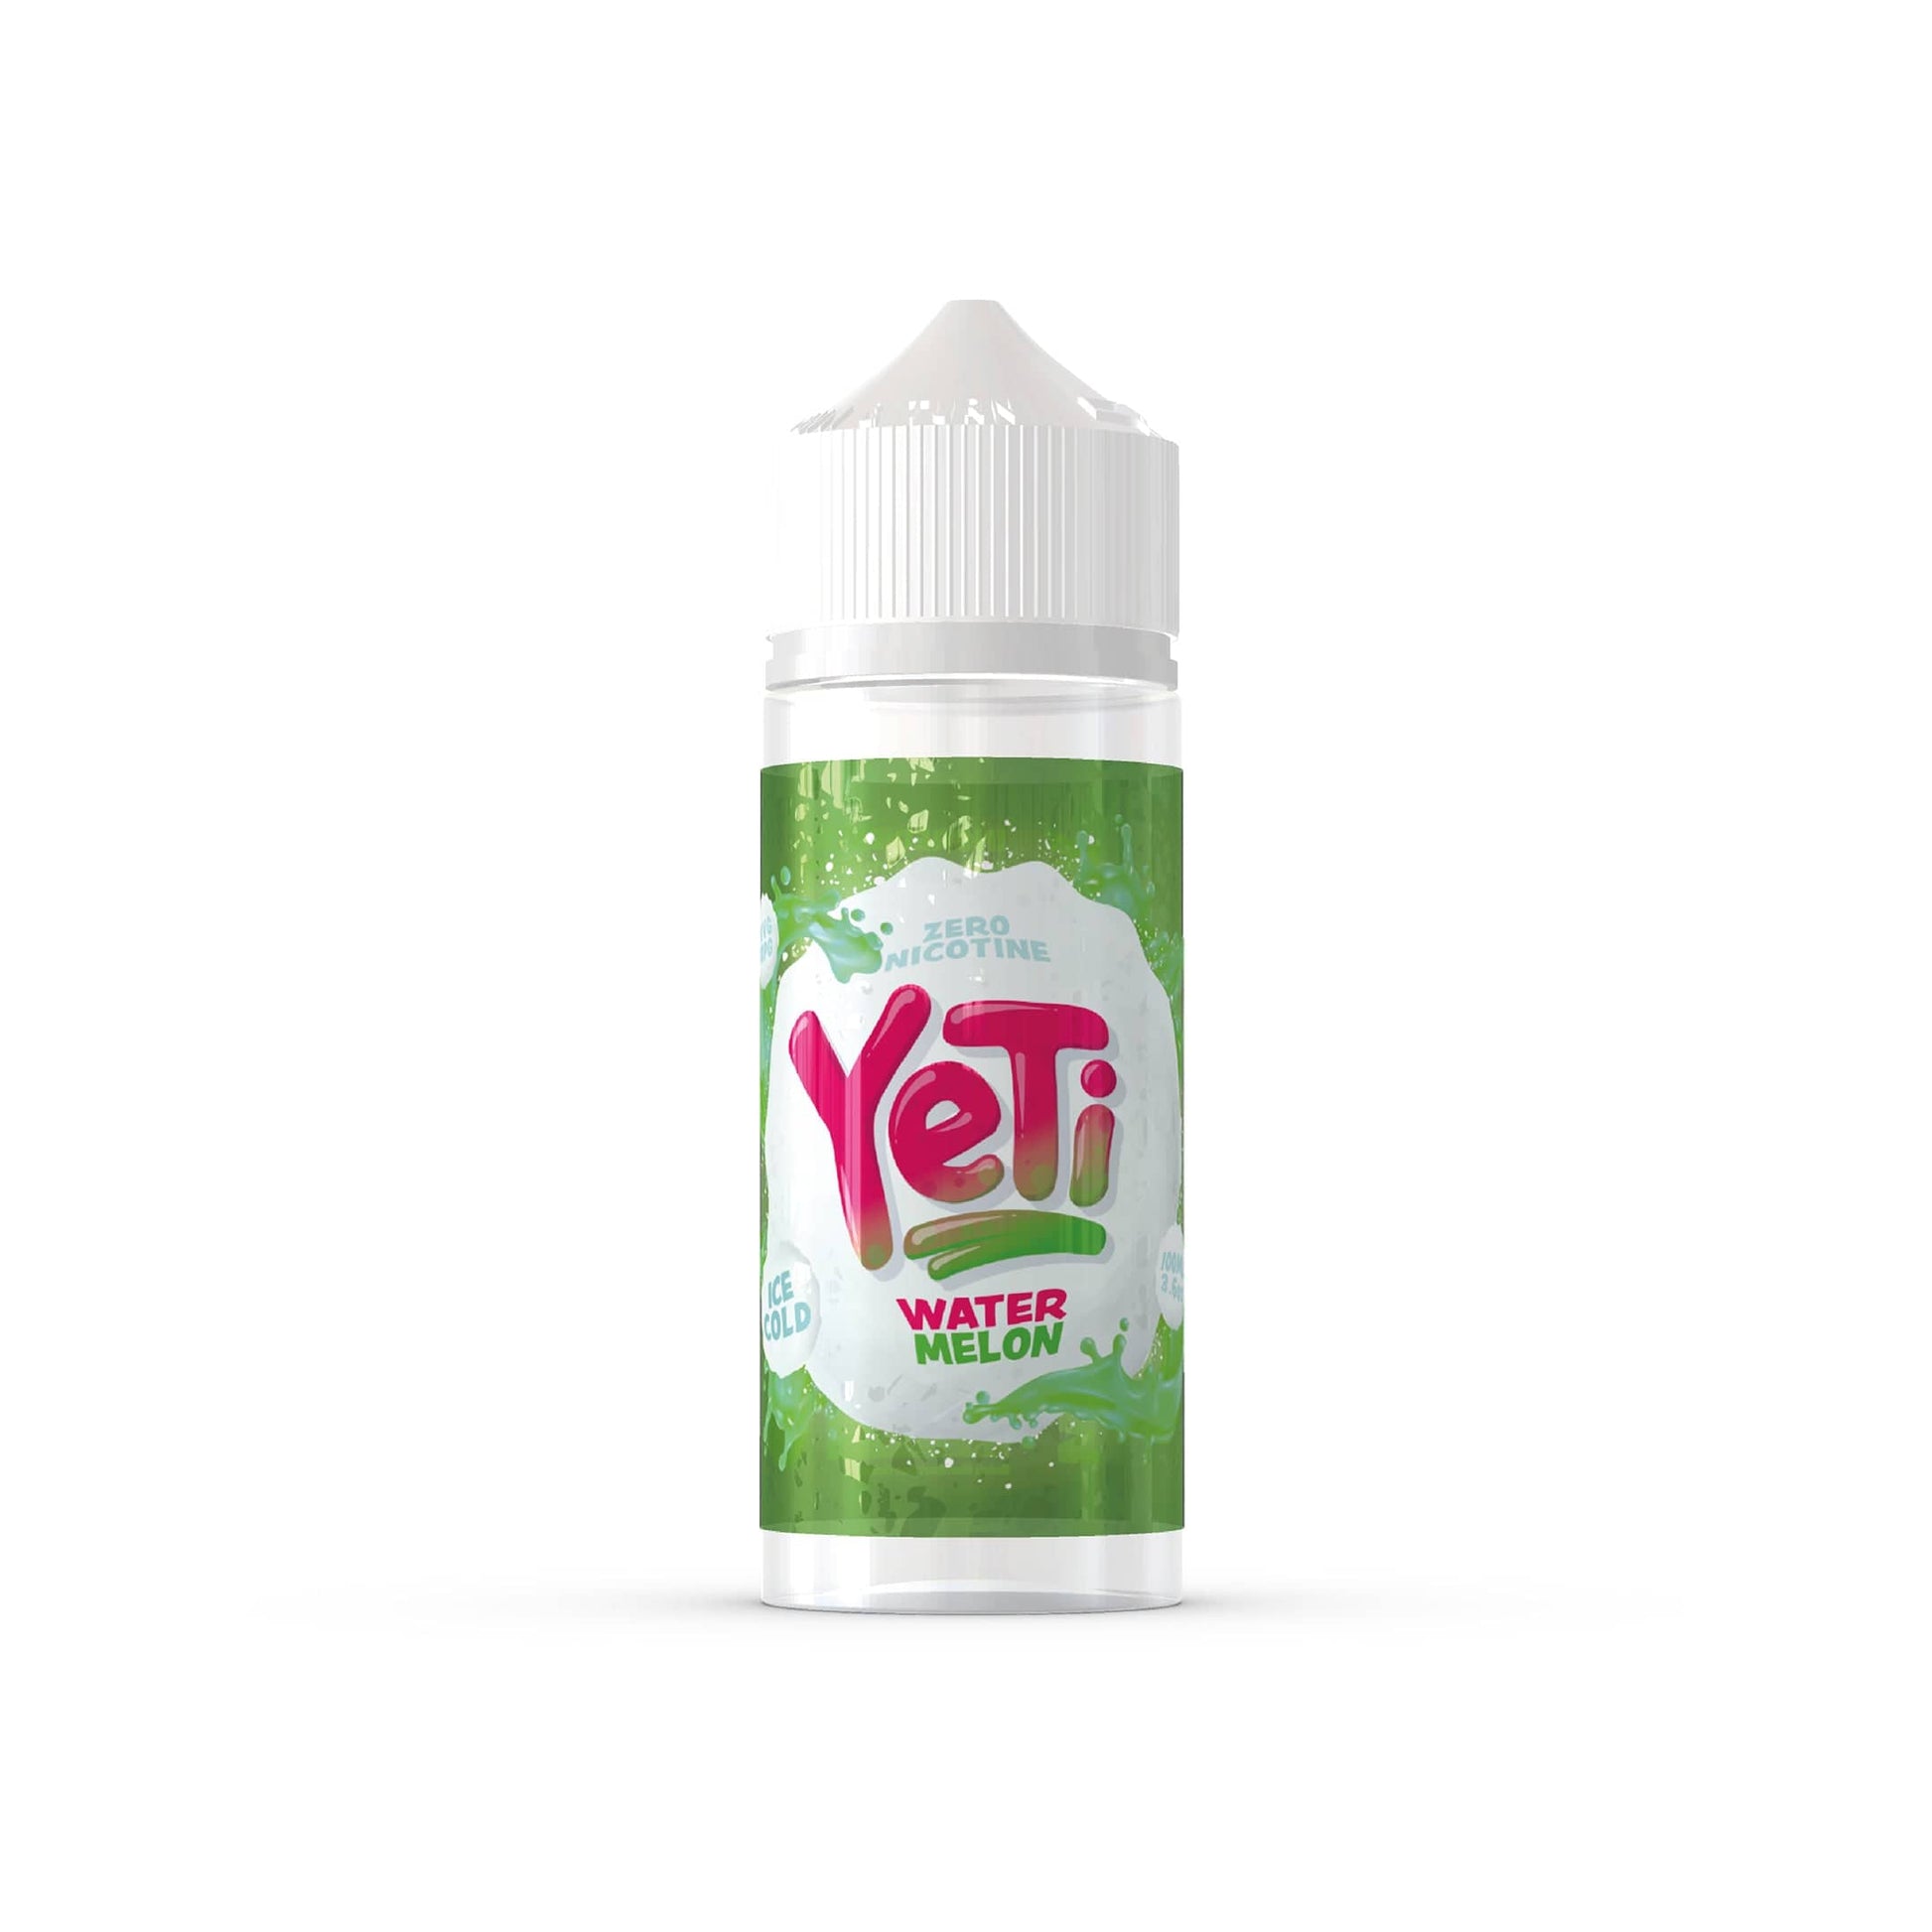 YETI E-Liquid Shortfill Eliquids Watermelon Yeti Ice Cold 100ml Shortfill E-Liquid